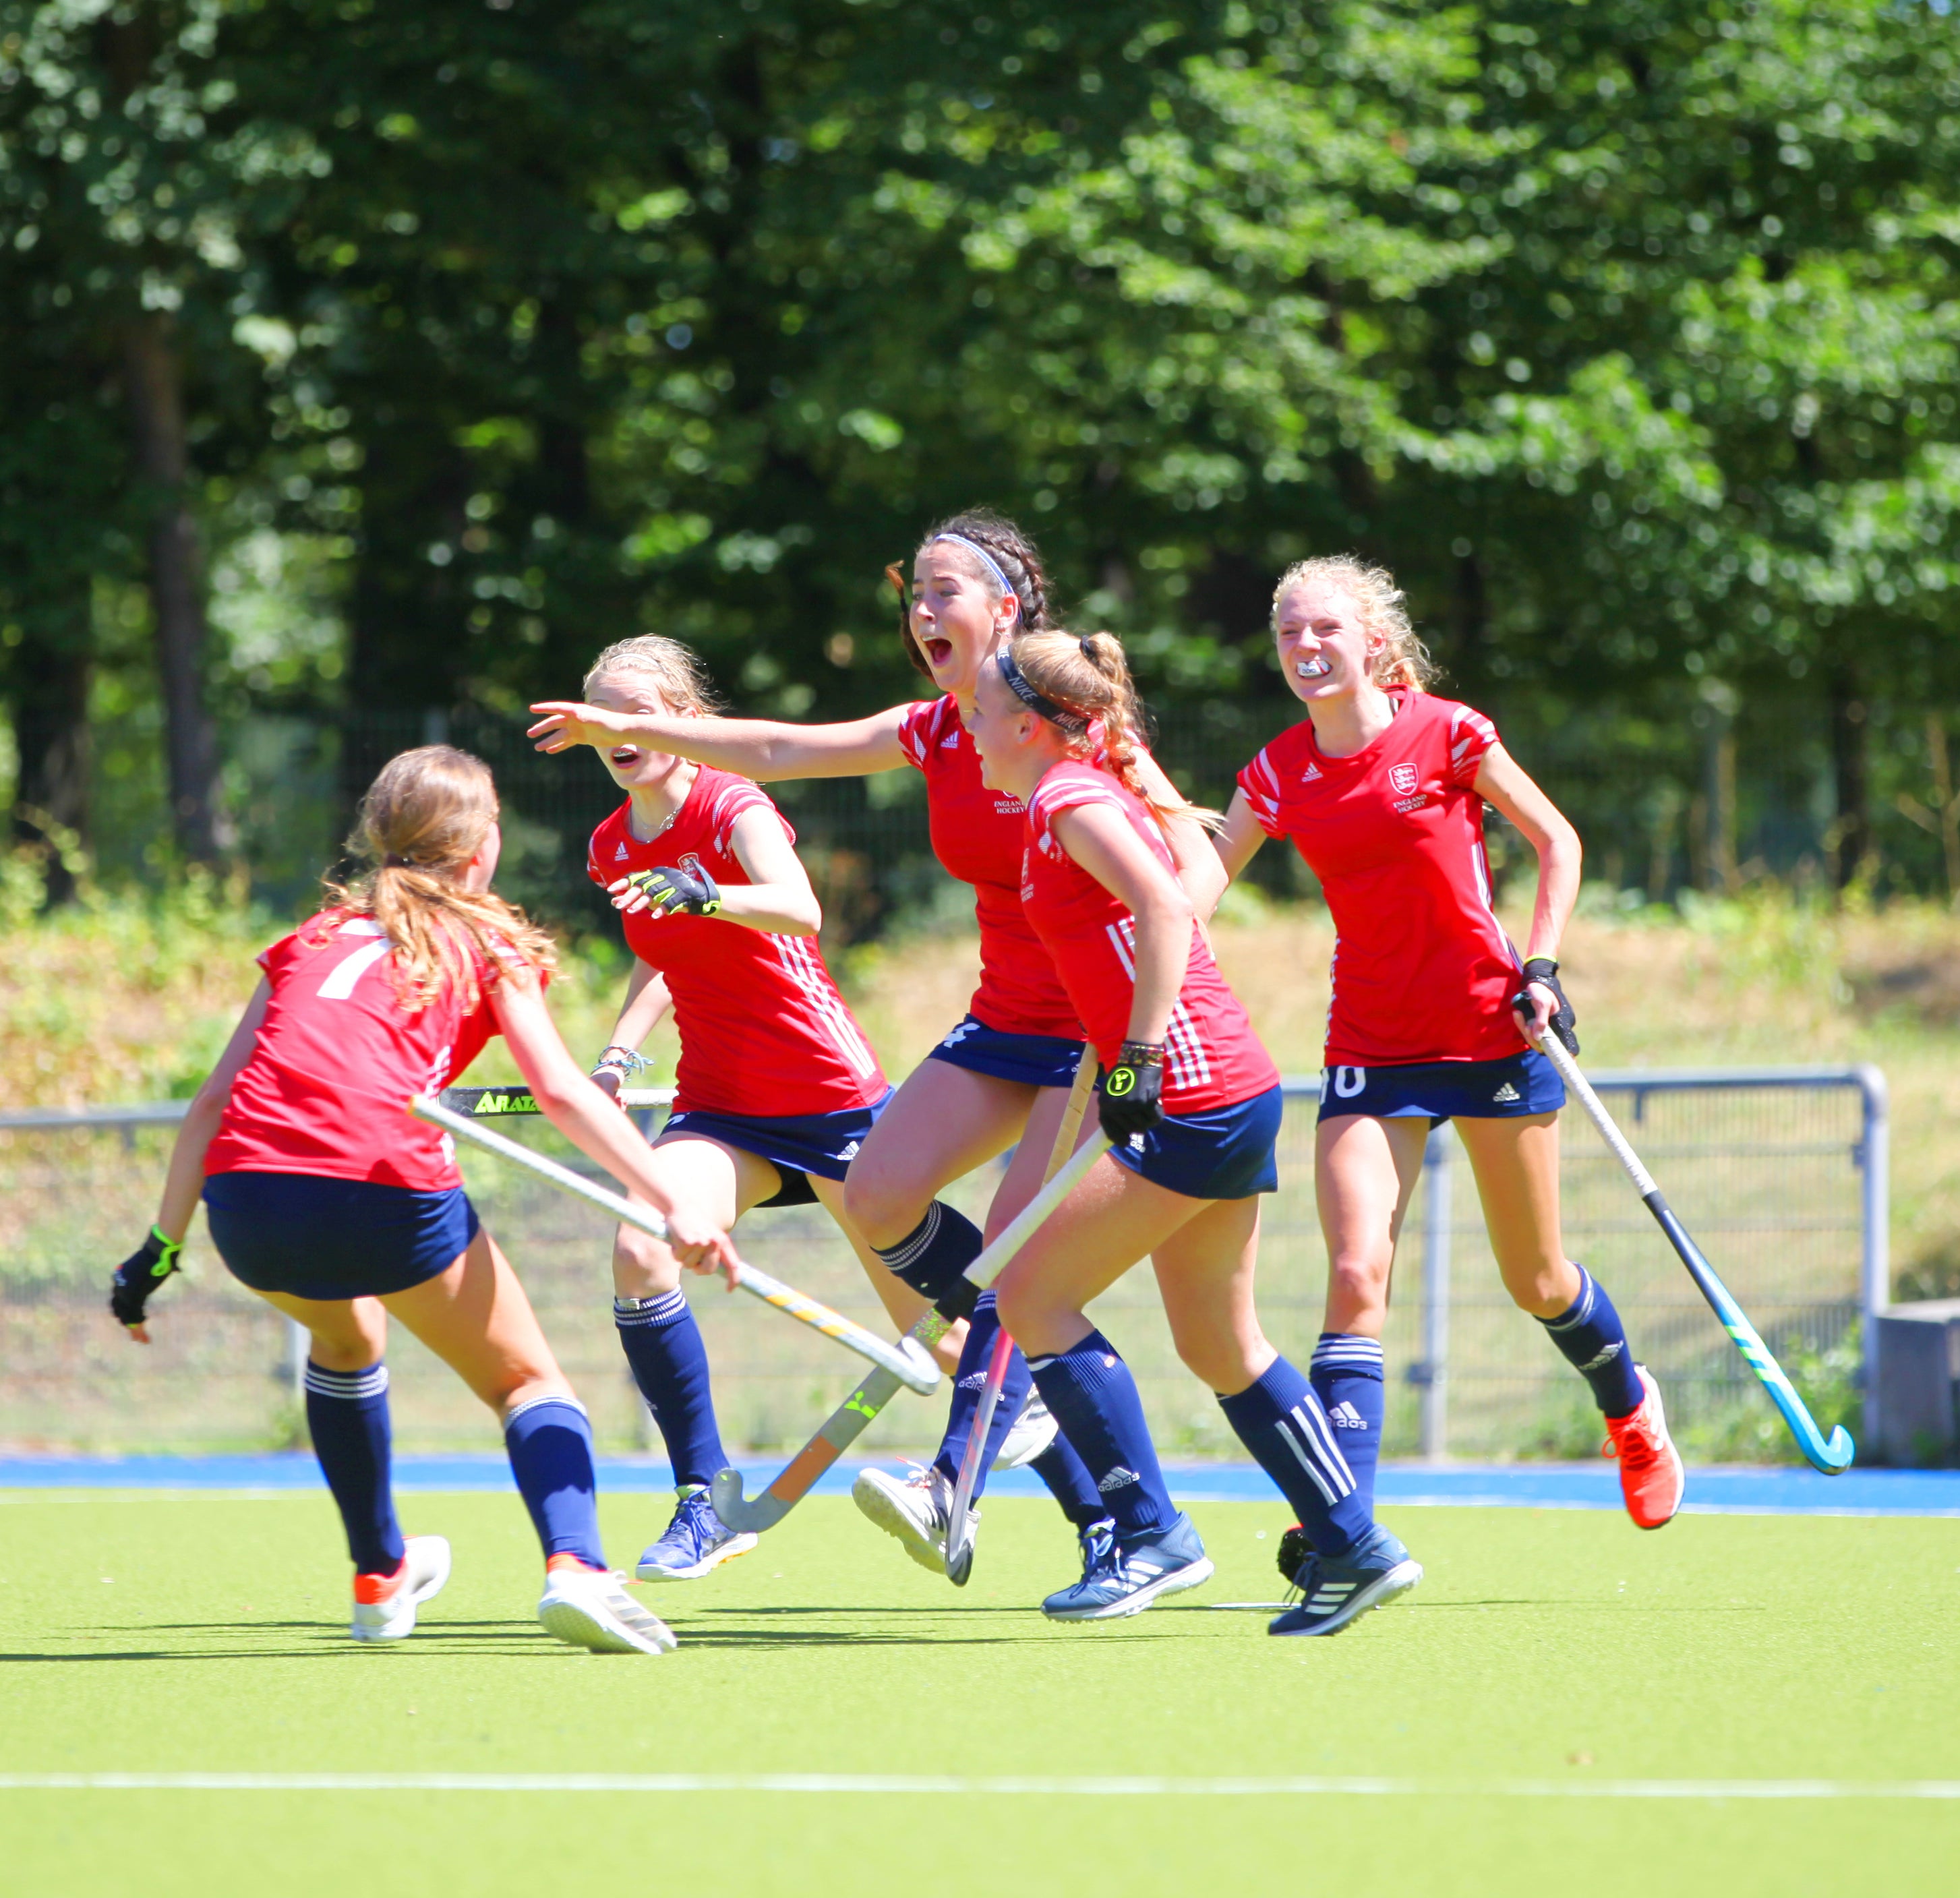 England U16 Girls celebrating goal against Germany